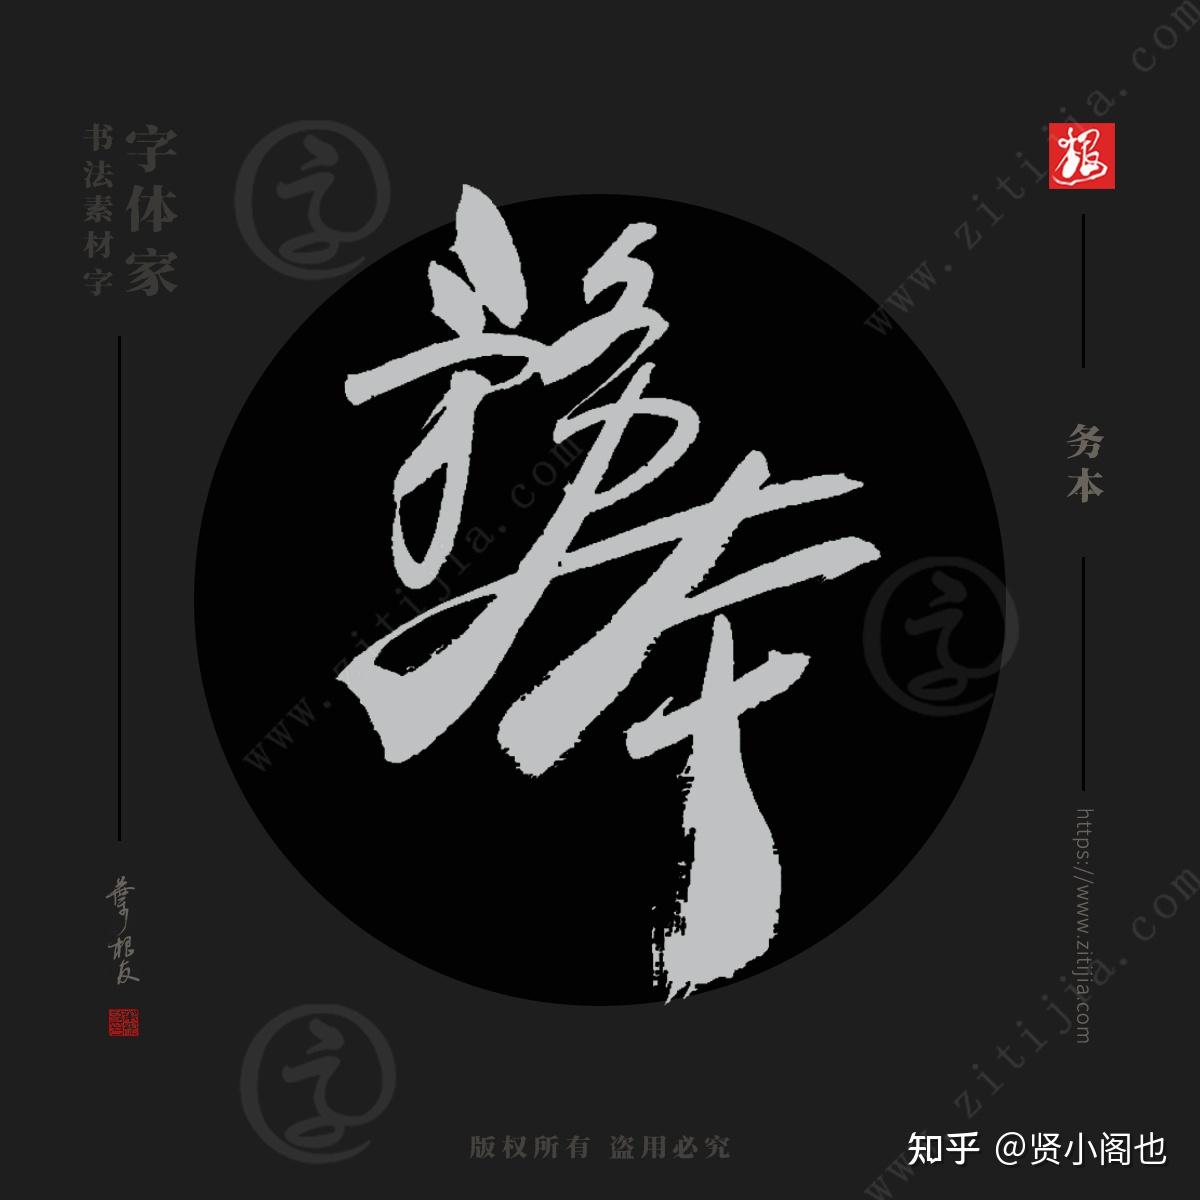 洒脱不羁心向不迷免费字体下载 - 中文字体免费下载尽在字体家